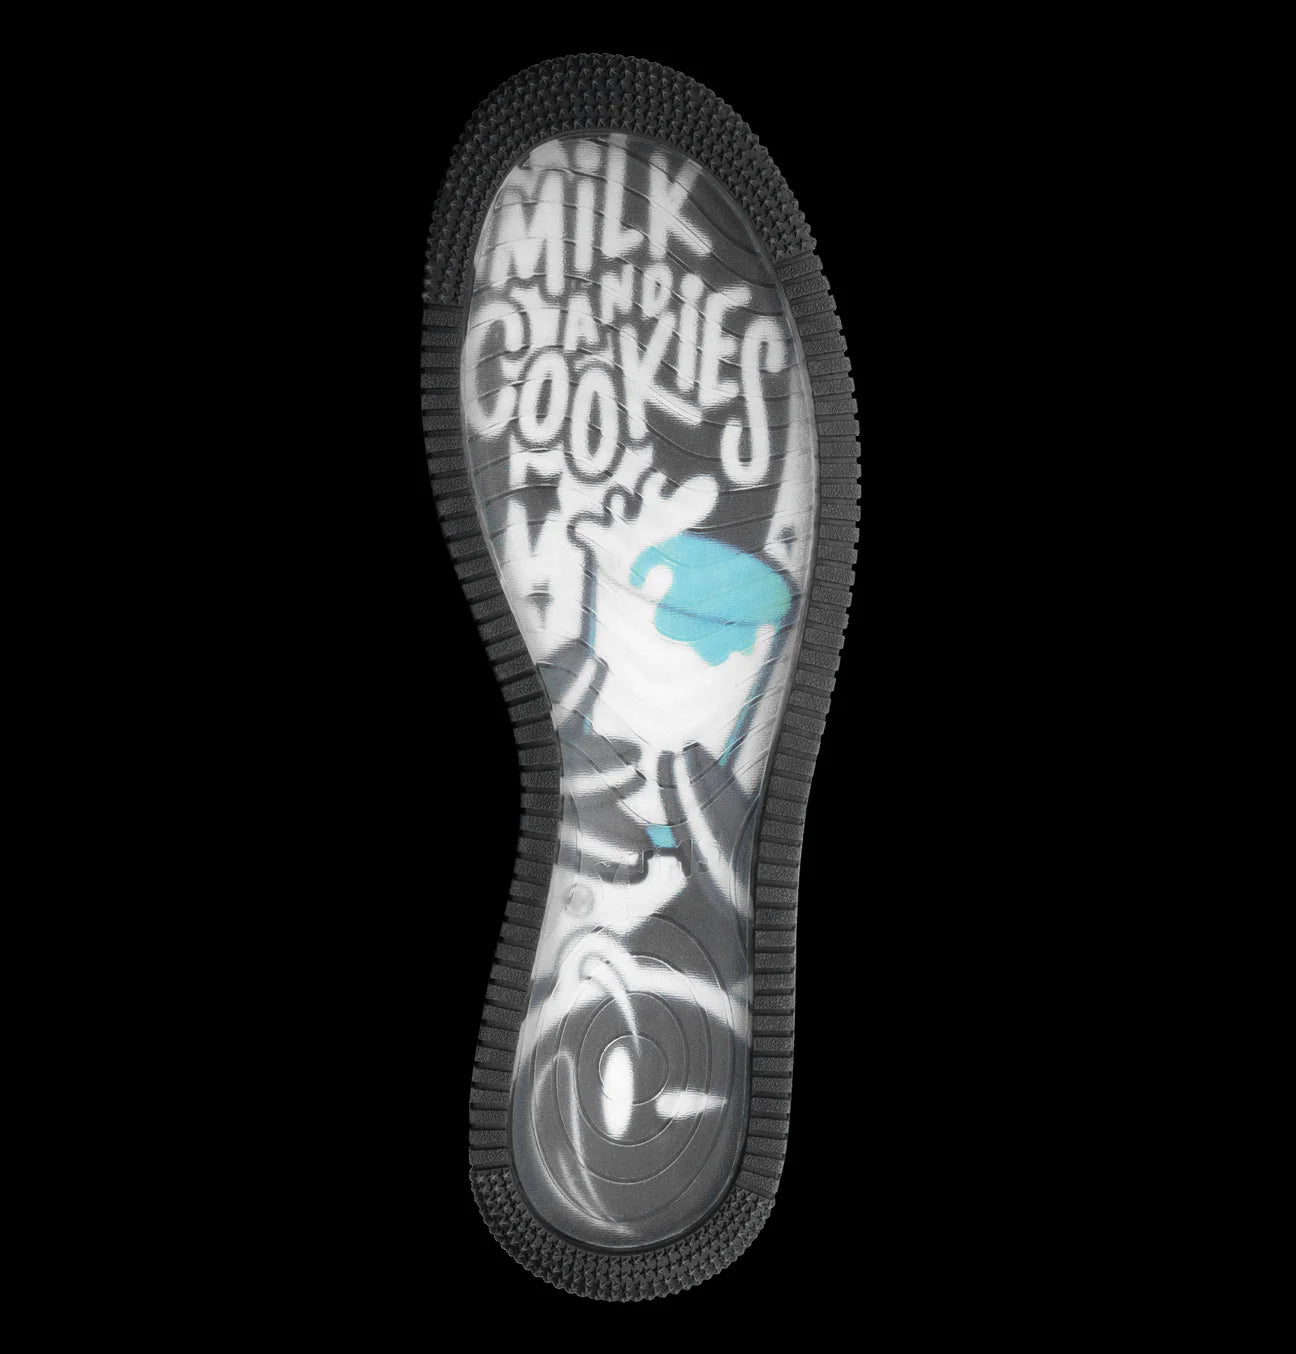 Yums sneakers “milk n cookies”